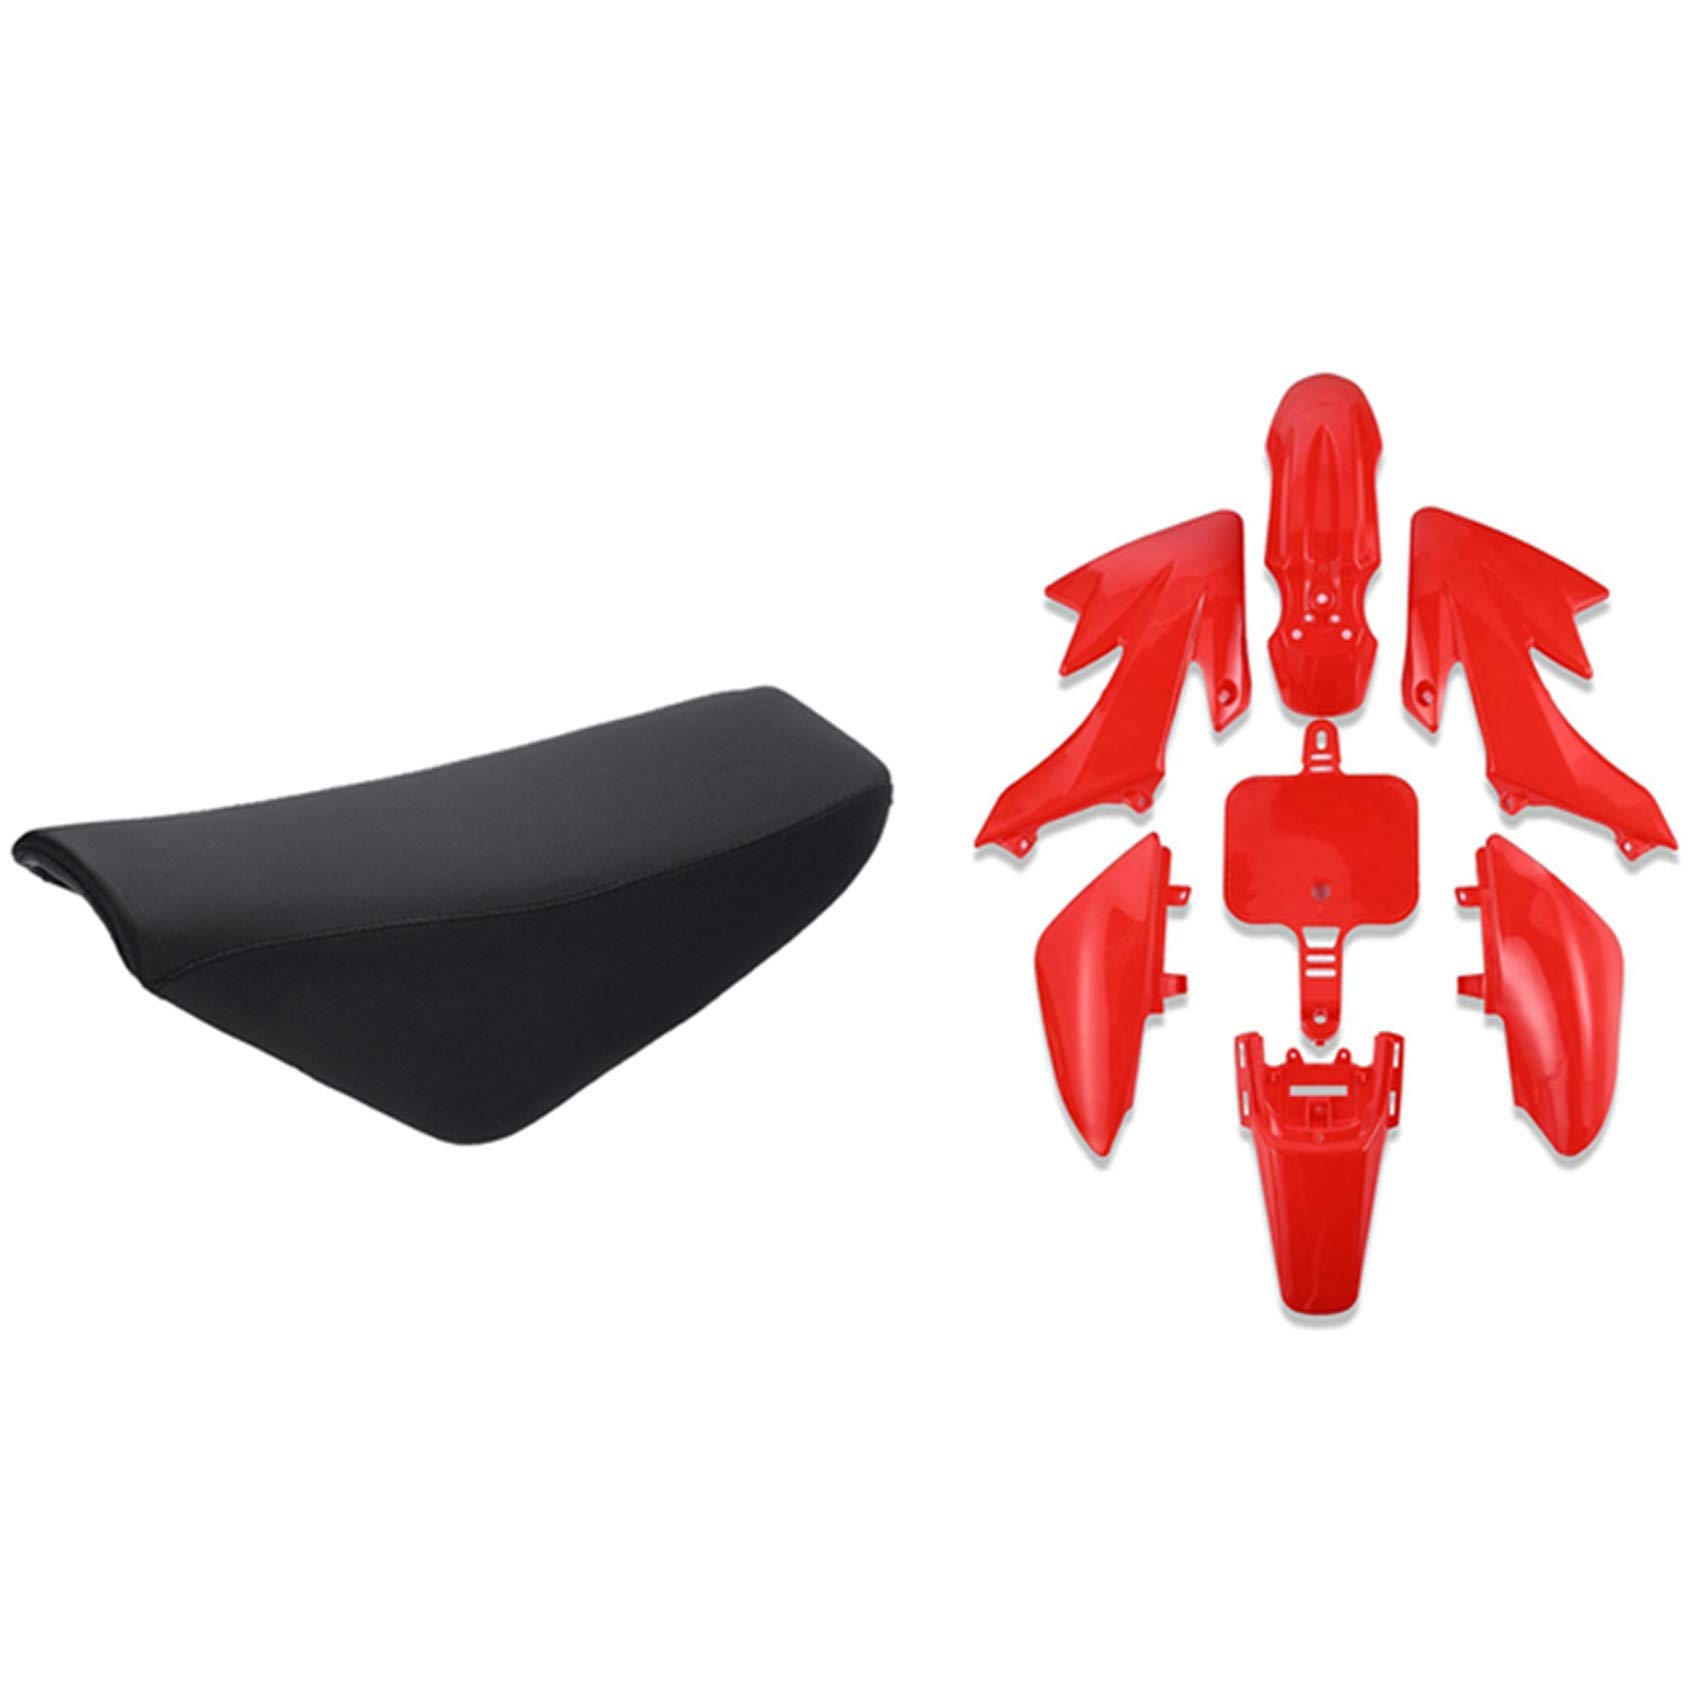 8-teiliges Autozubehör: 1 x schwarzes flaches Schaumstoff-Sitzkissen und 7-teiliges Kunststoffverkleidungs-Karosserie-Set von Beelooom